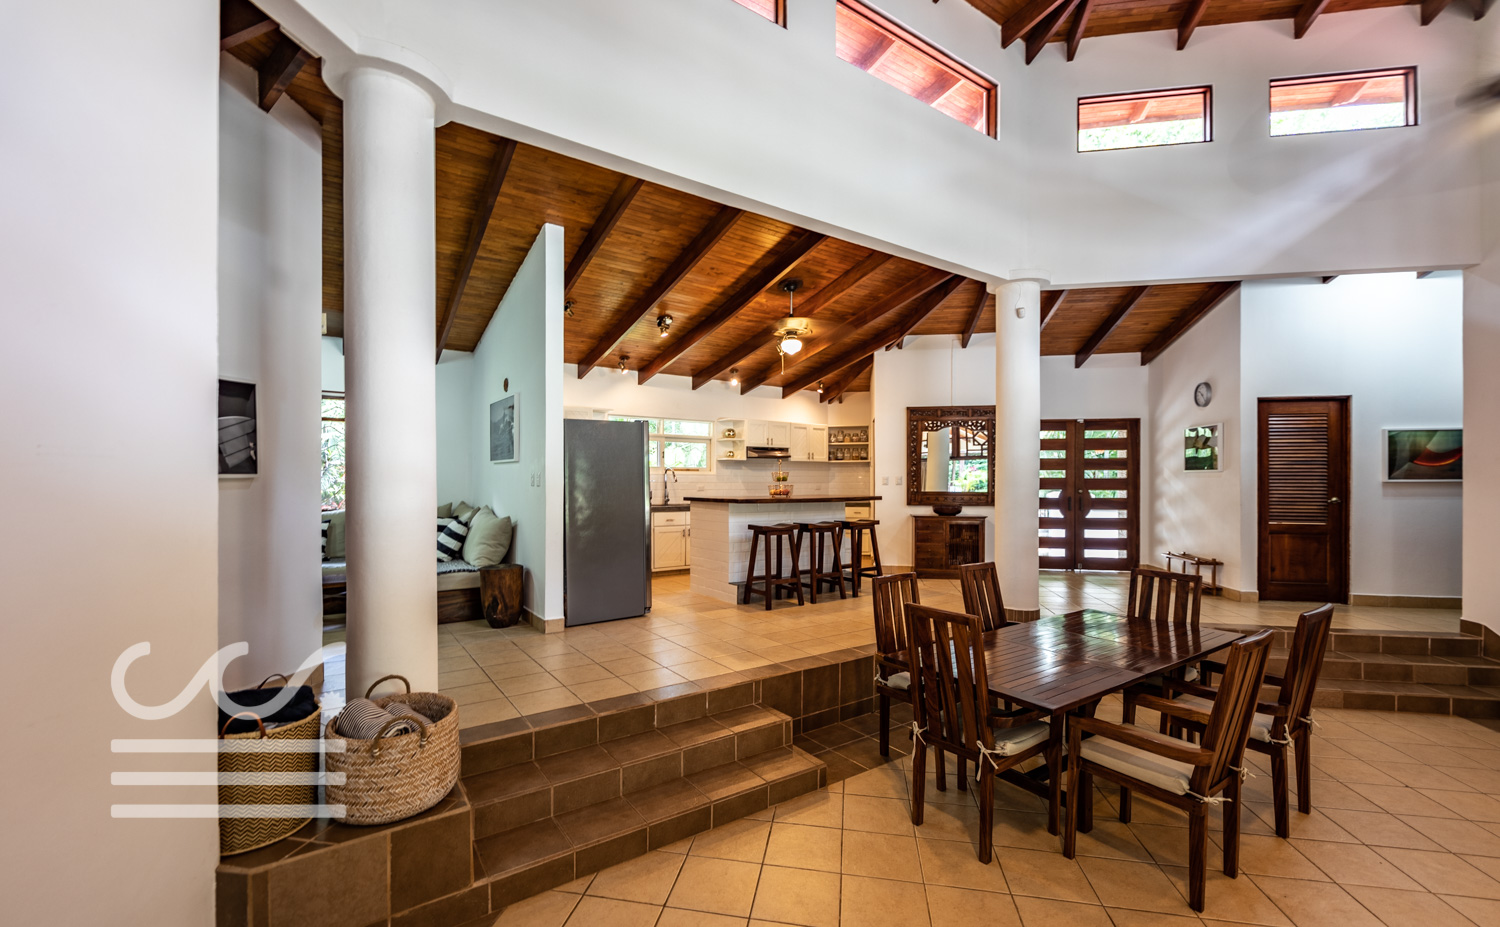 Casa-de-Sueño-Wanderlust-Realty-Real-Estate-Rentals-Nosara-Costa-Rica-17.jpg